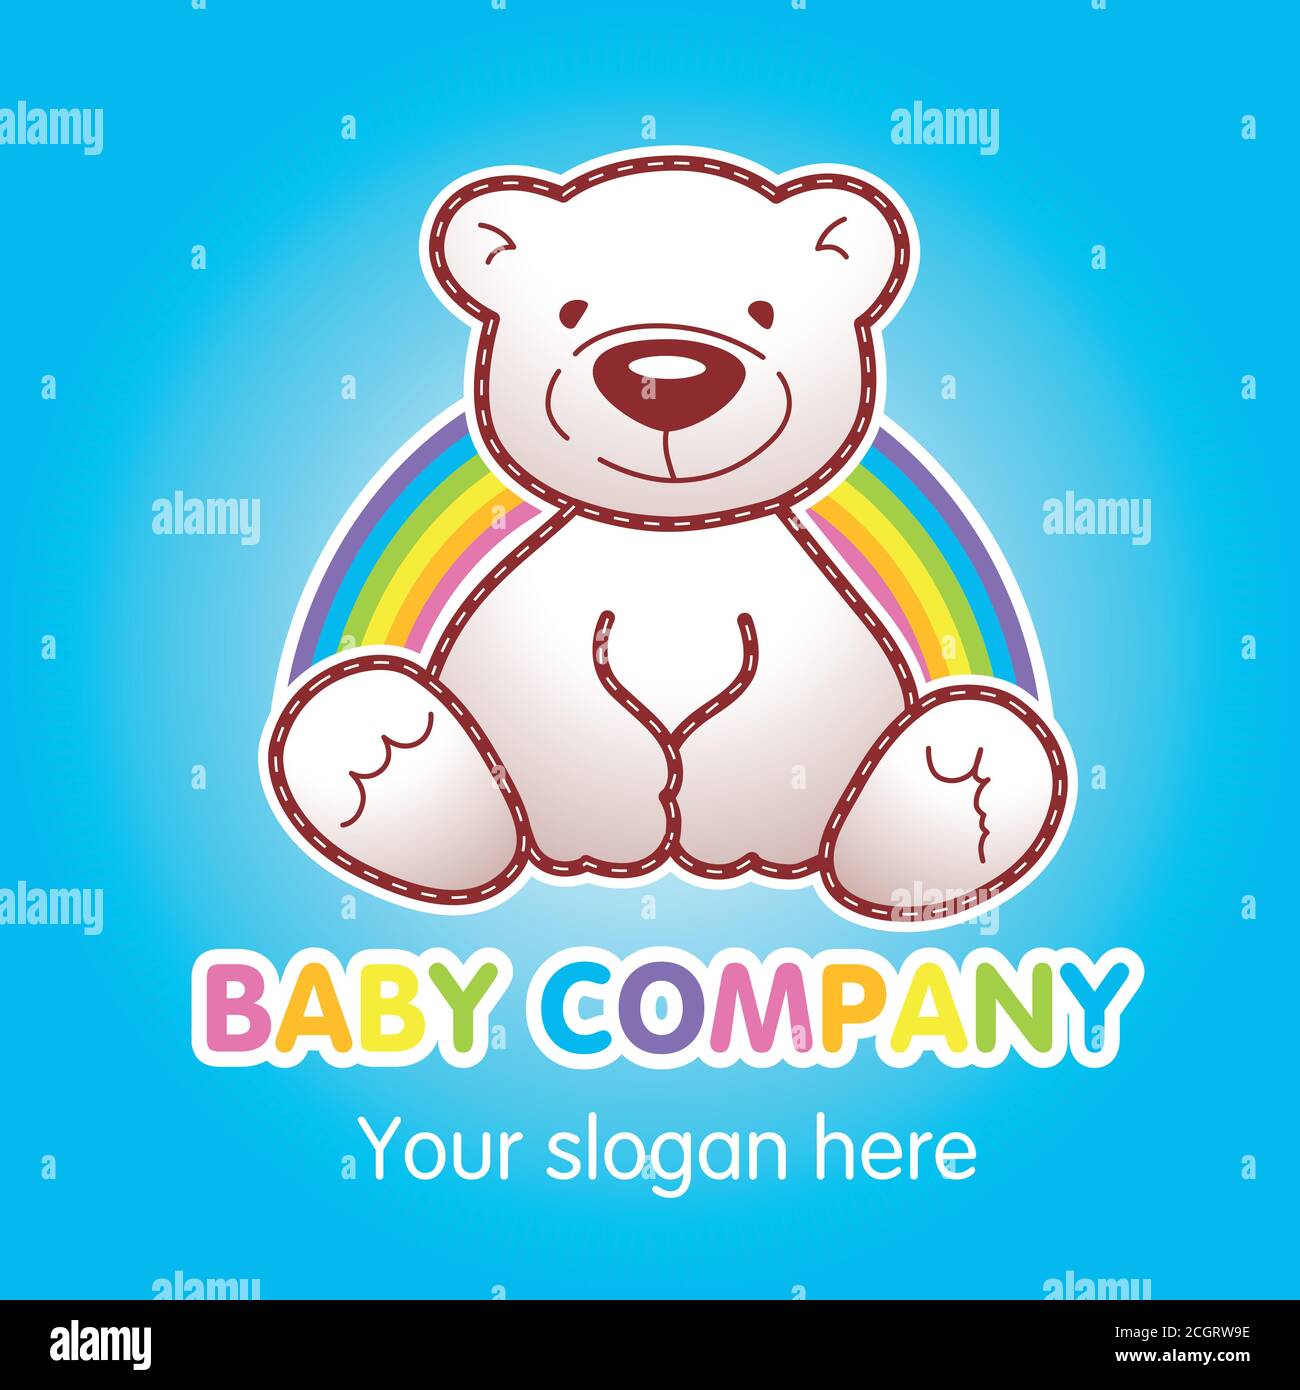 Waren für Kinder Top-Shop Vektor-Logo. Spielzeug animierte Baby Bär sitzt unter Regenbogen. Spielzeugladen Anzeige, Buch der Geschichten Charakter. Grußkarte mit Teddy Stock Vektor